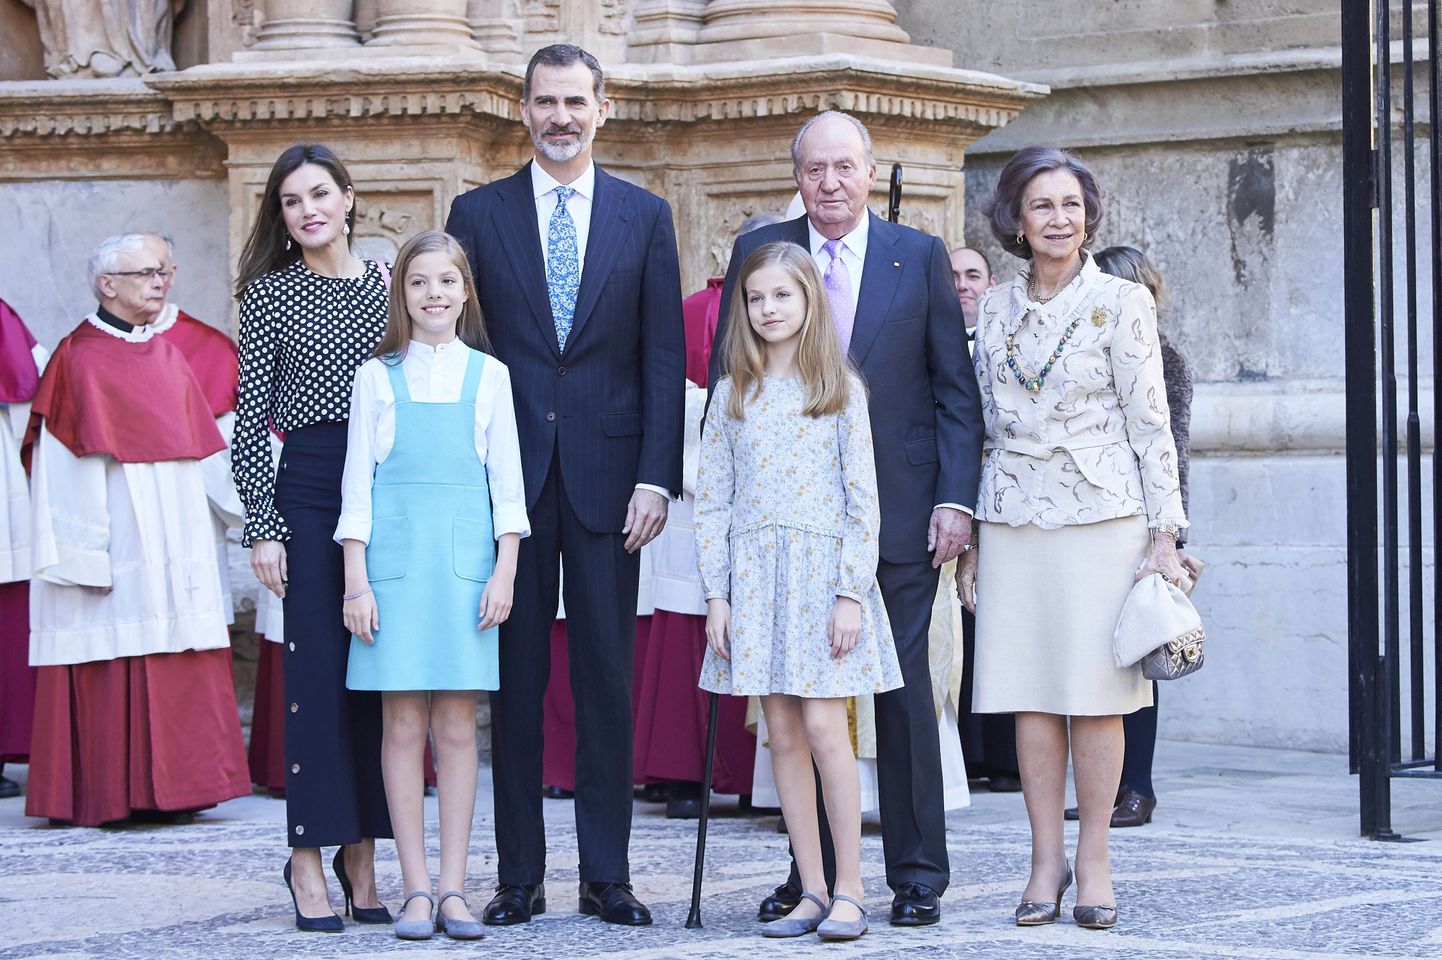 Hispaania kuningapere vasakult alates: kuninganna Letizia, printsess Leonor, kuningas Felipe VI, infanta Sofia, kuningas Juan Carlos I ja kuninganna Sofia